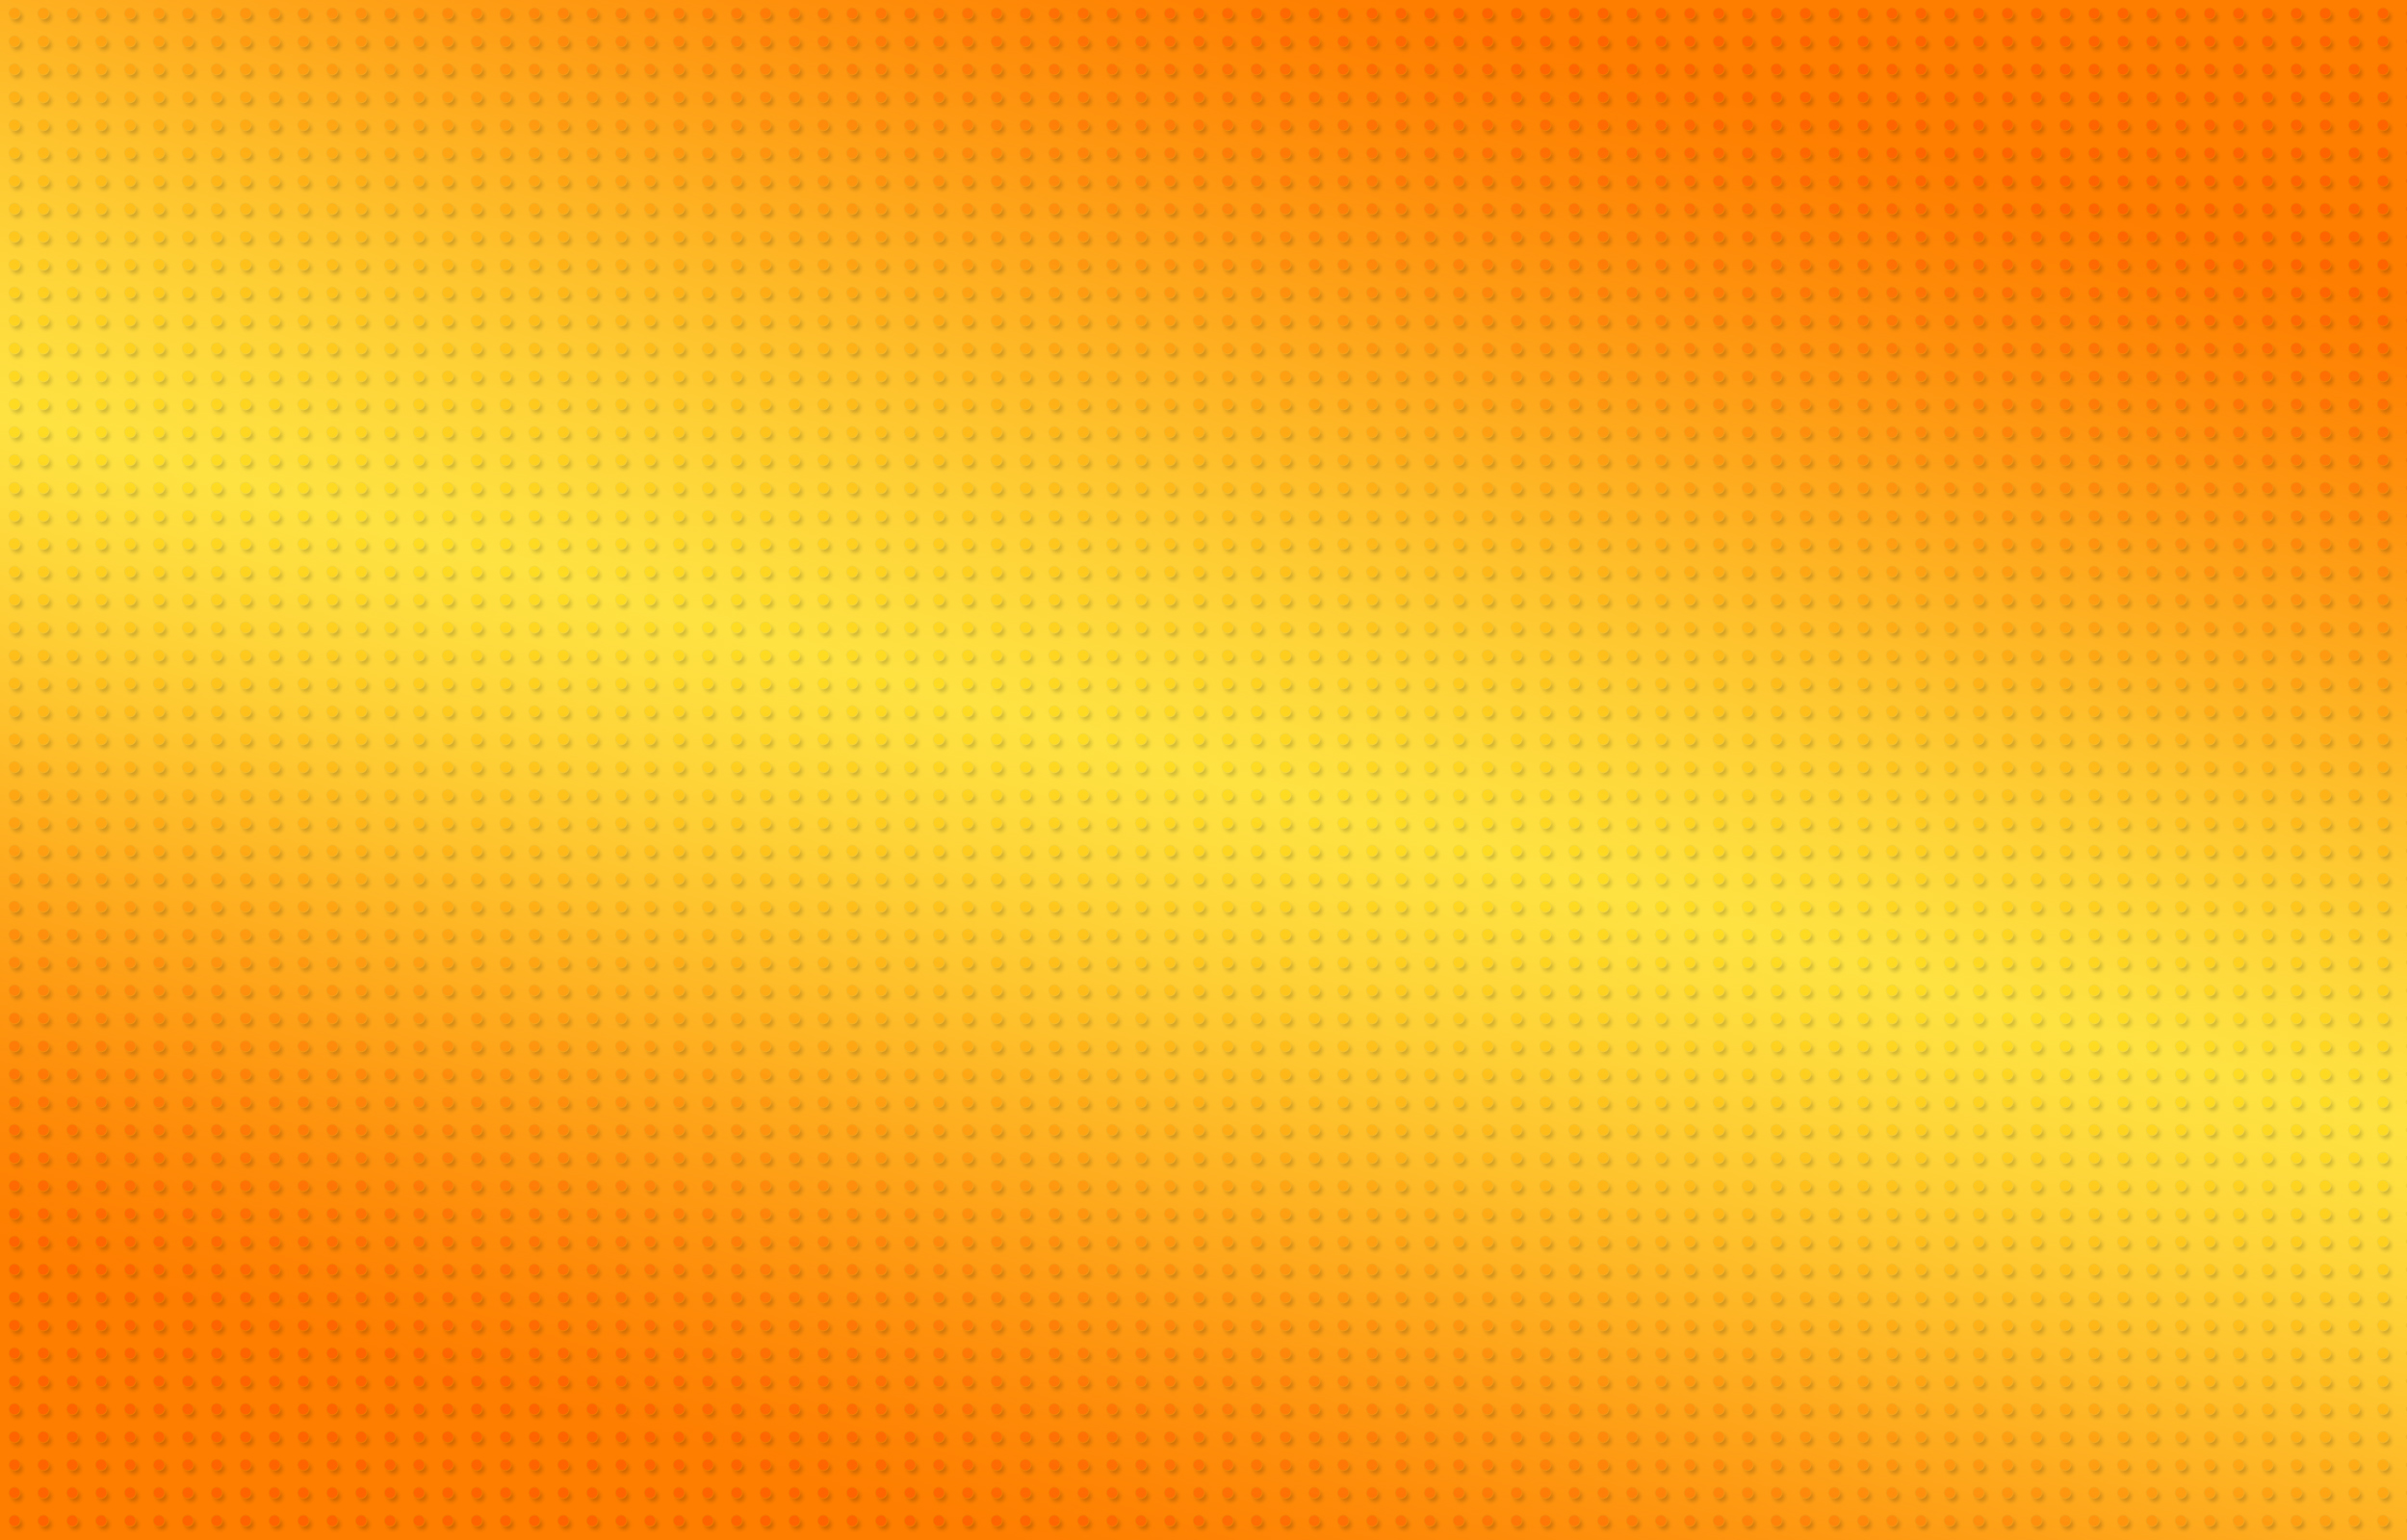 Orange của NickoLass không chỉ là một tên sản phẩm với một thiết kế ấn tượng, mà còn là sự kết hợp tuyệt vời giữa màu Cam và màu Vàng. Hãy mở cửa cho sự sáng tạo và tận hưởng ngay những hình ảnh đầy màu sắc này!